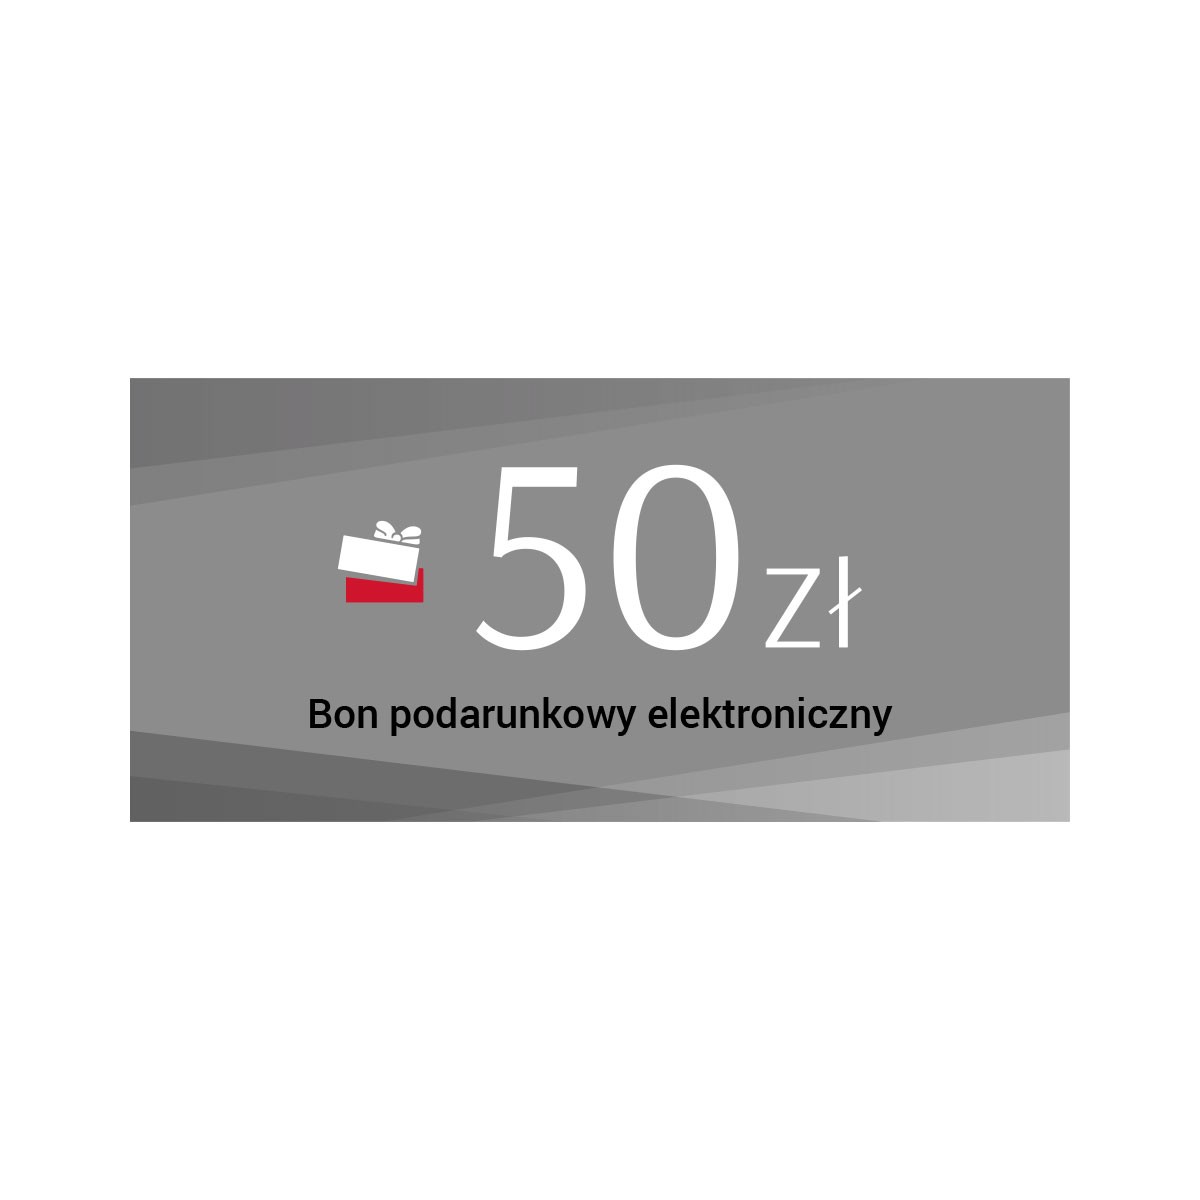 Elektroniczny bon podarunkowy - 50 zł